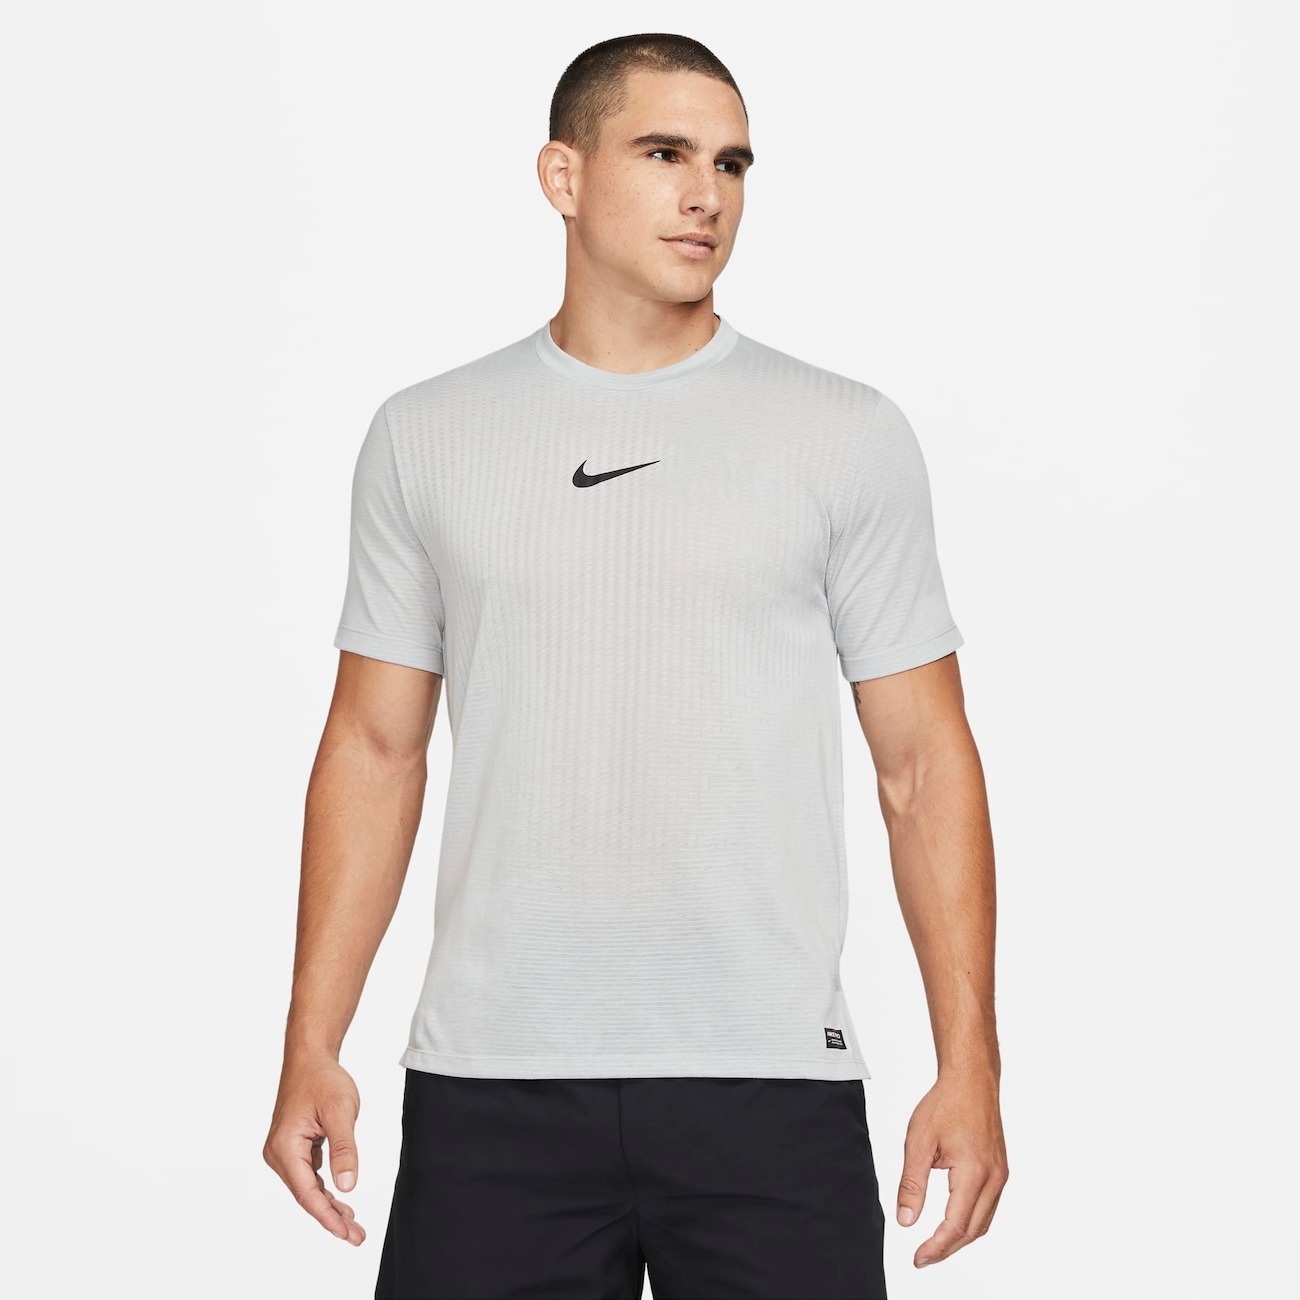 Camiseta Nike Pro Dri-FIT ADV Masculina - Faz a Boa!